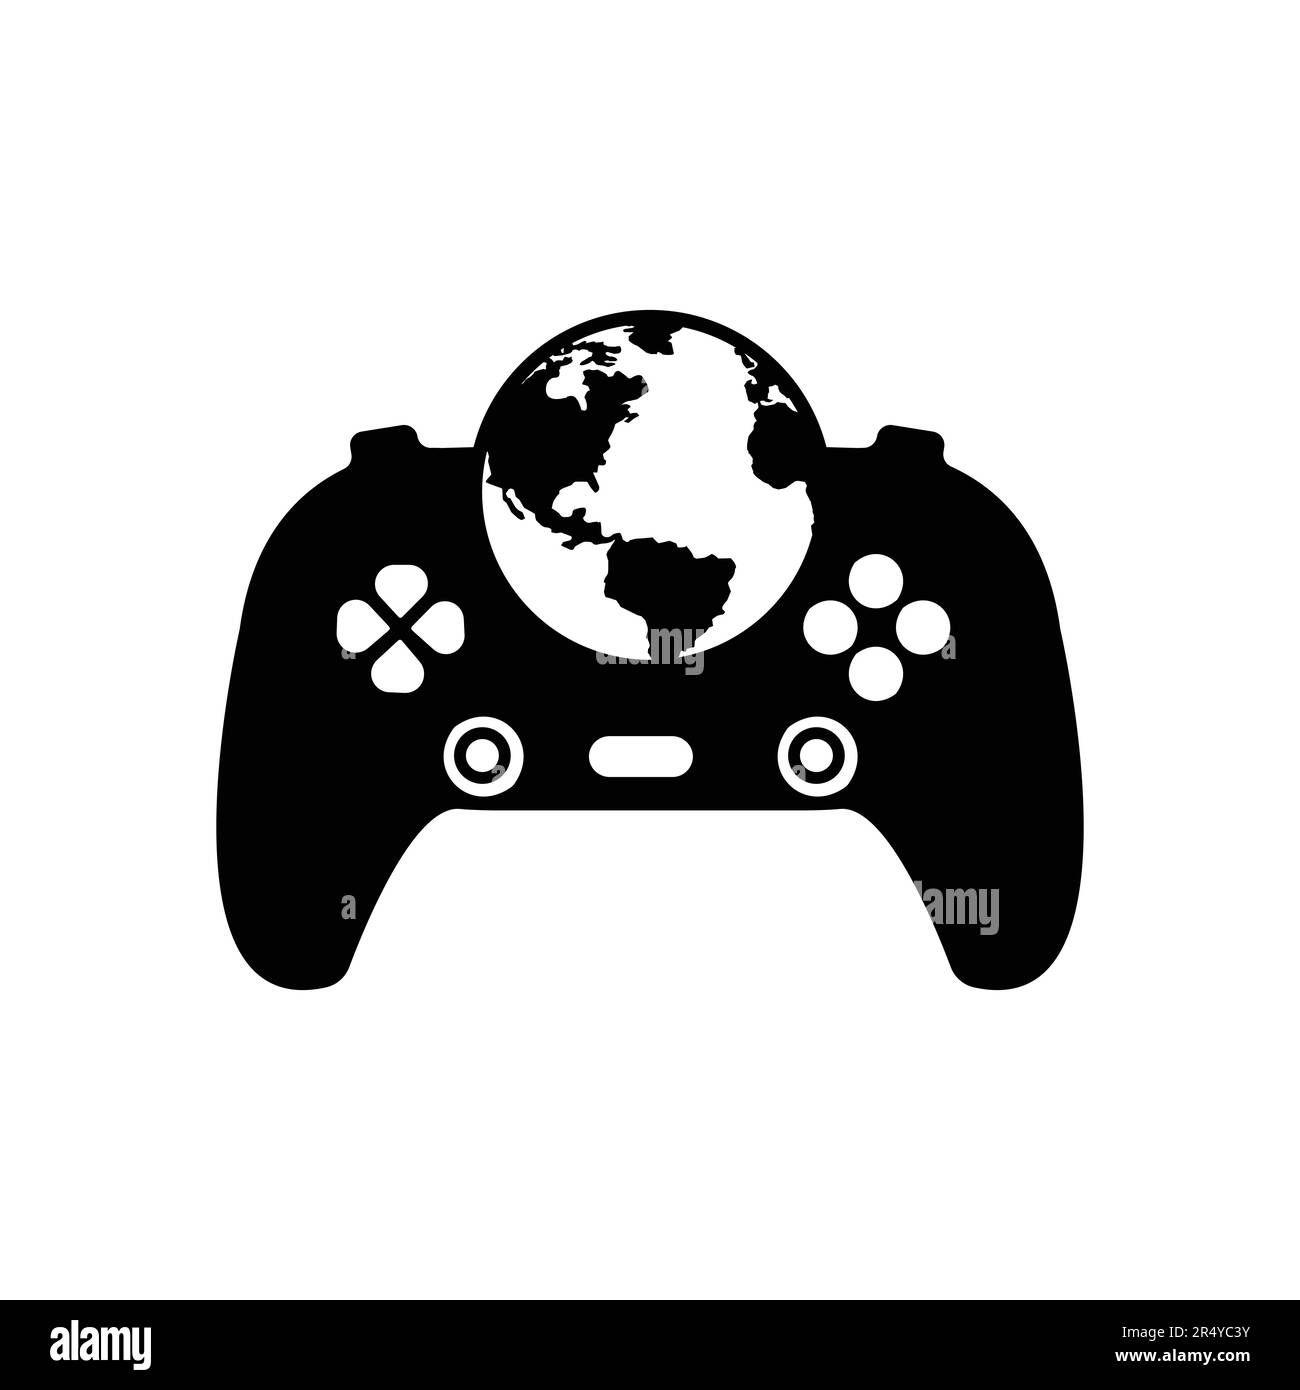 Game globe logo Icon design. online gamer world silhouette vector illustration Stock Vector